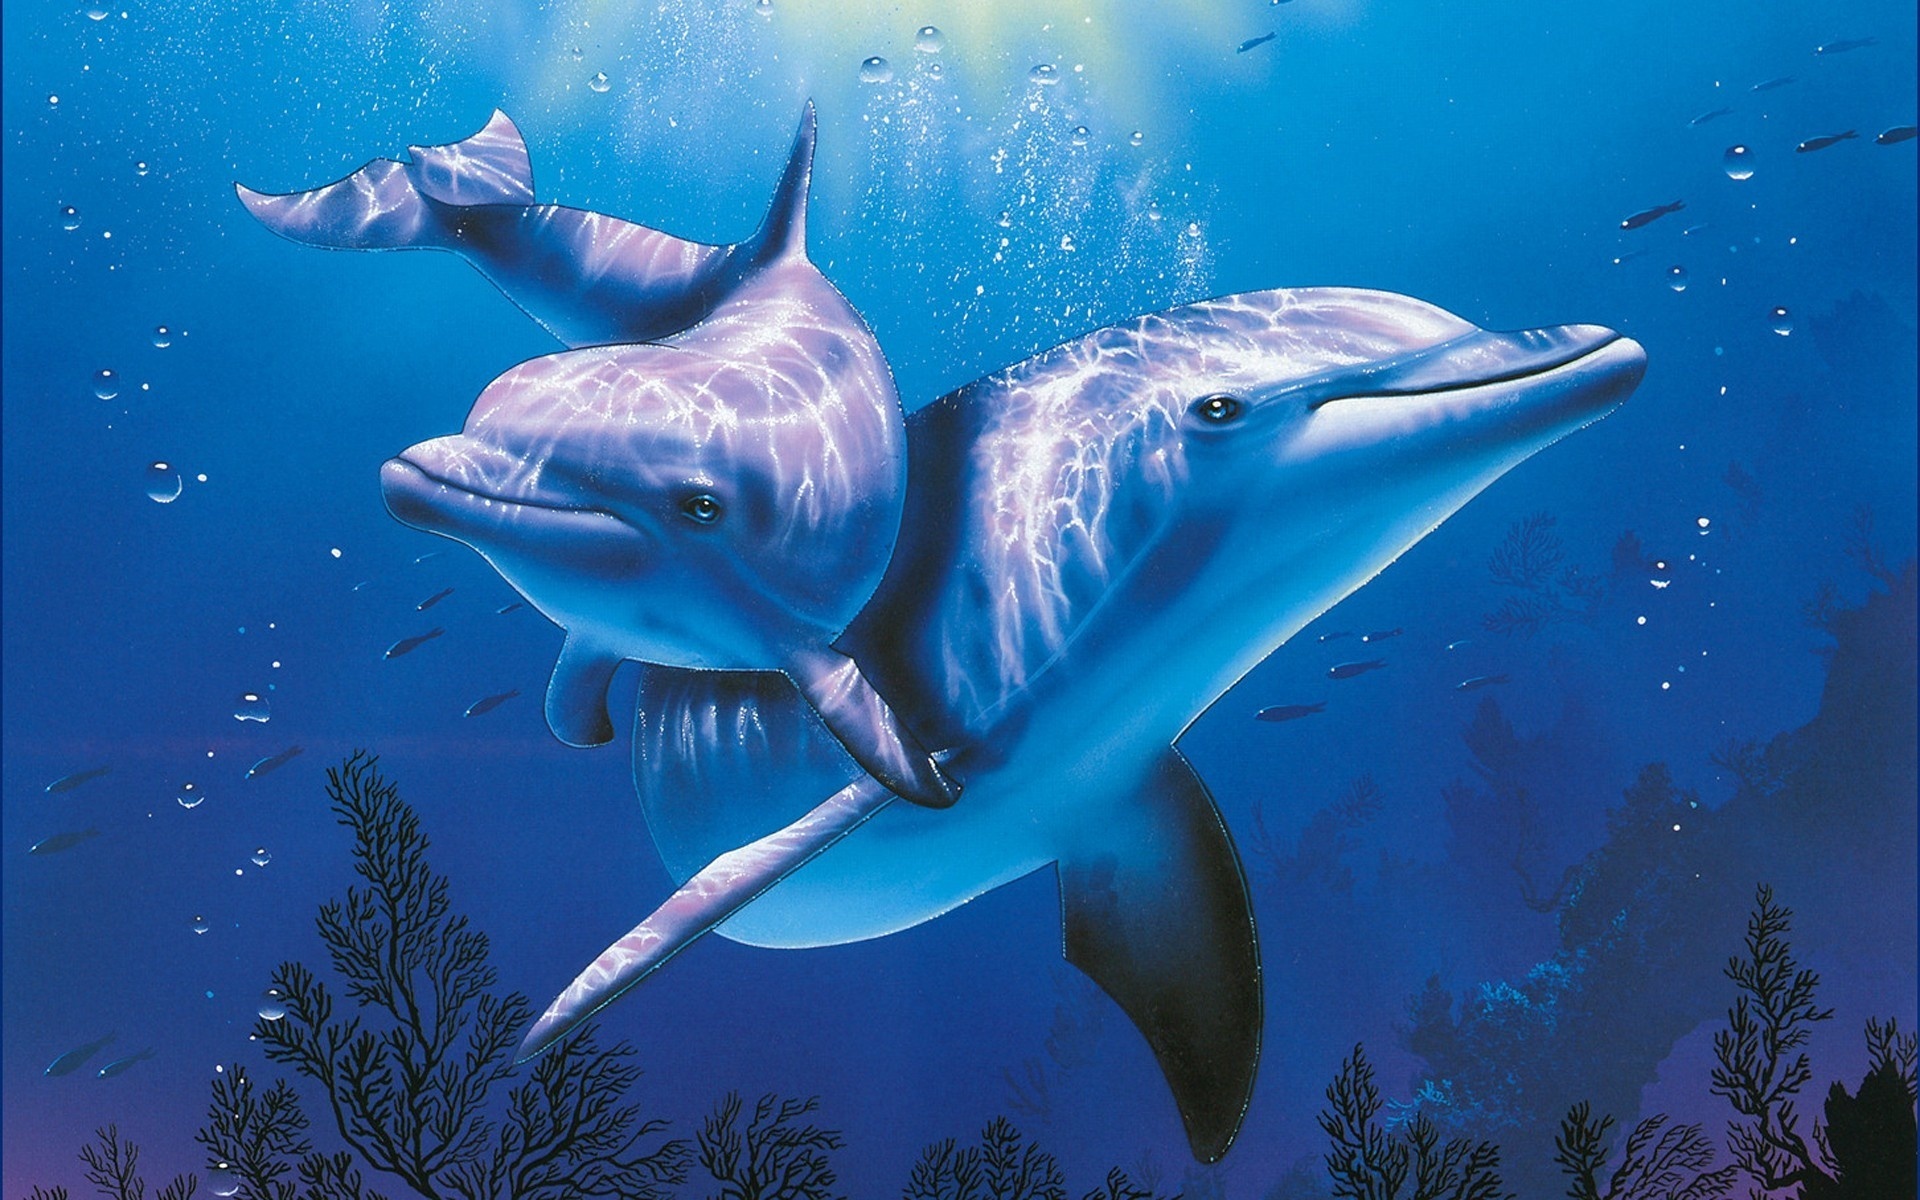 Dolphins dina gambar laut